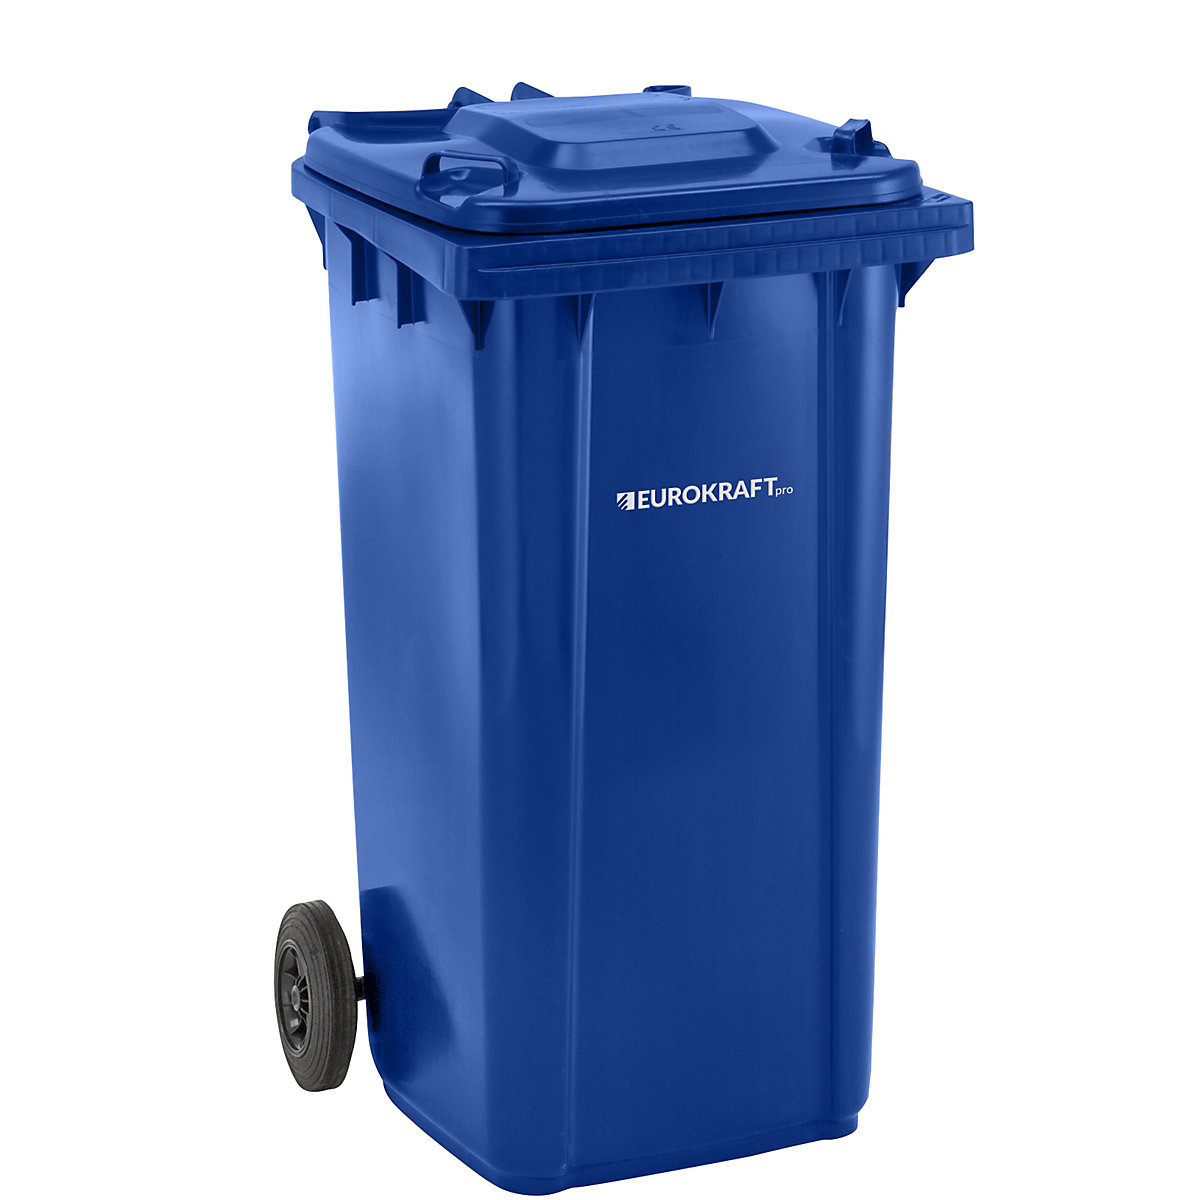 Bidone per rifiuti in plastica DIN EN 840 – eurokraft pro, capacità 240 l, largh. x alt. x prof. 580 x 1100 x 740 mm, blu, a partire da 5 pz.-5